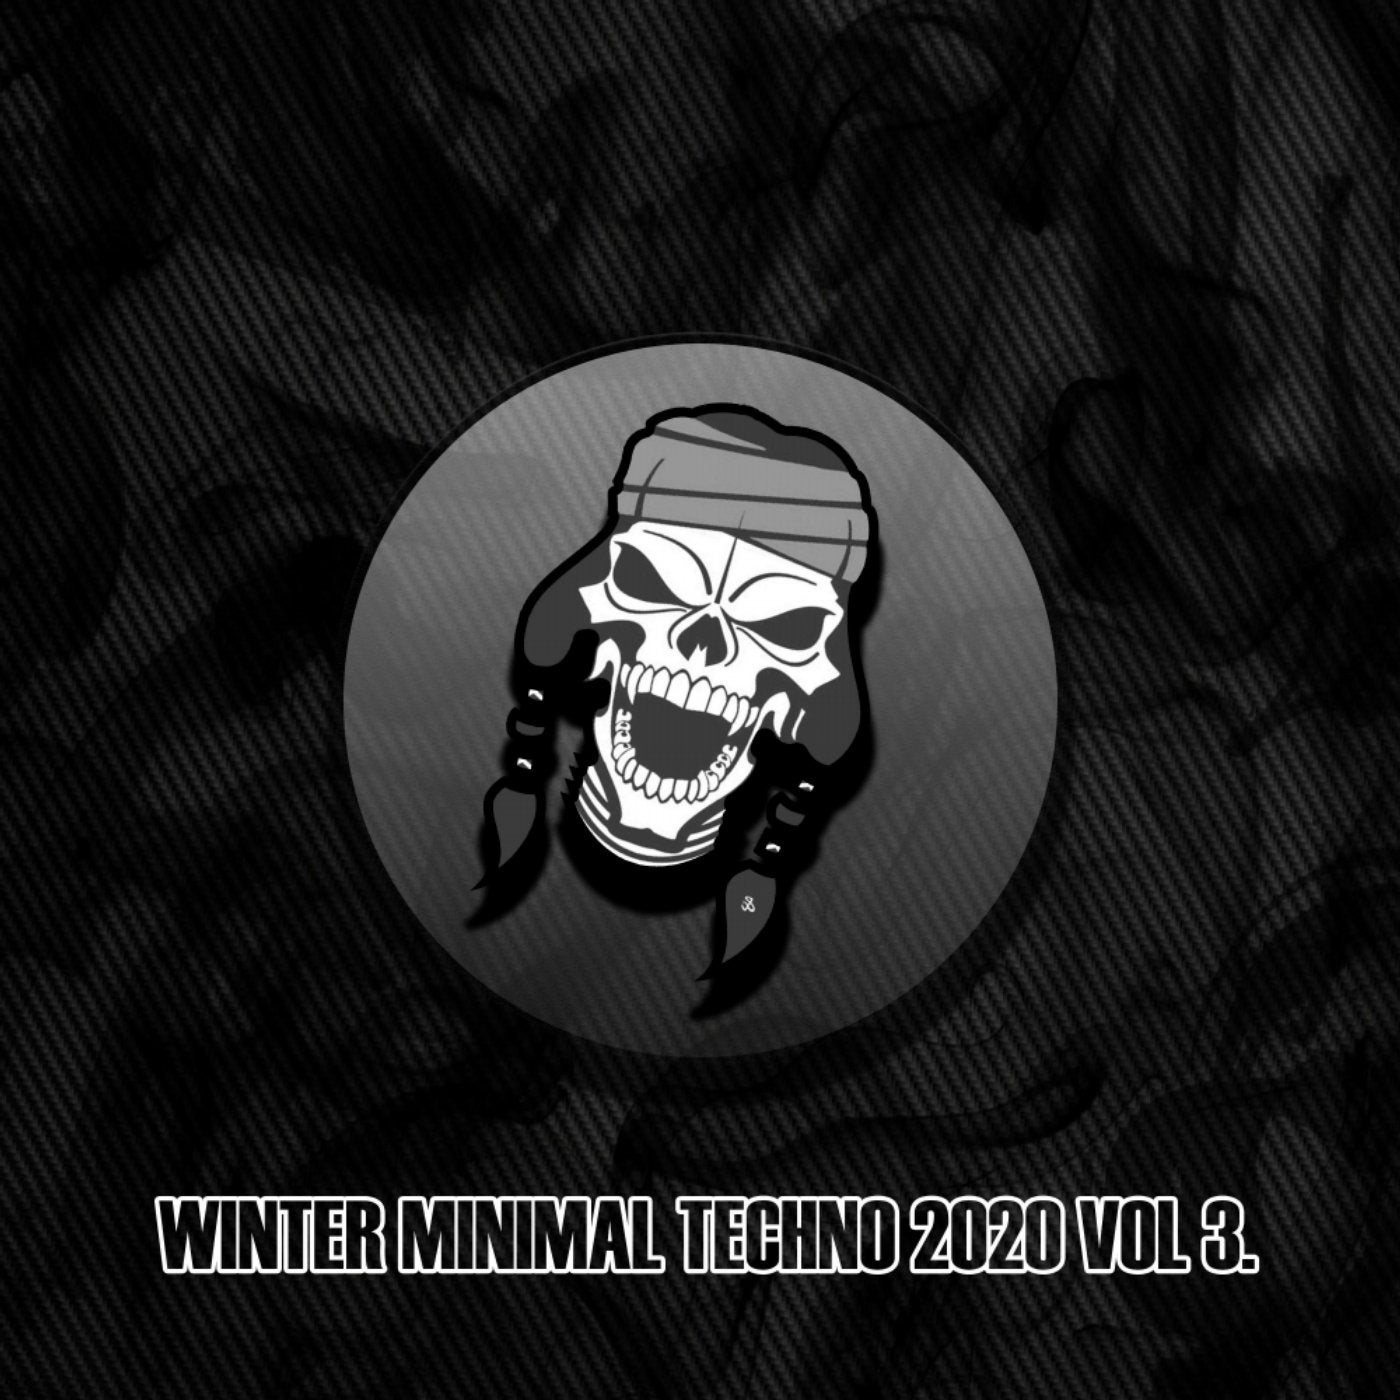 Winter Minimal Techno 2020, Vol. 3